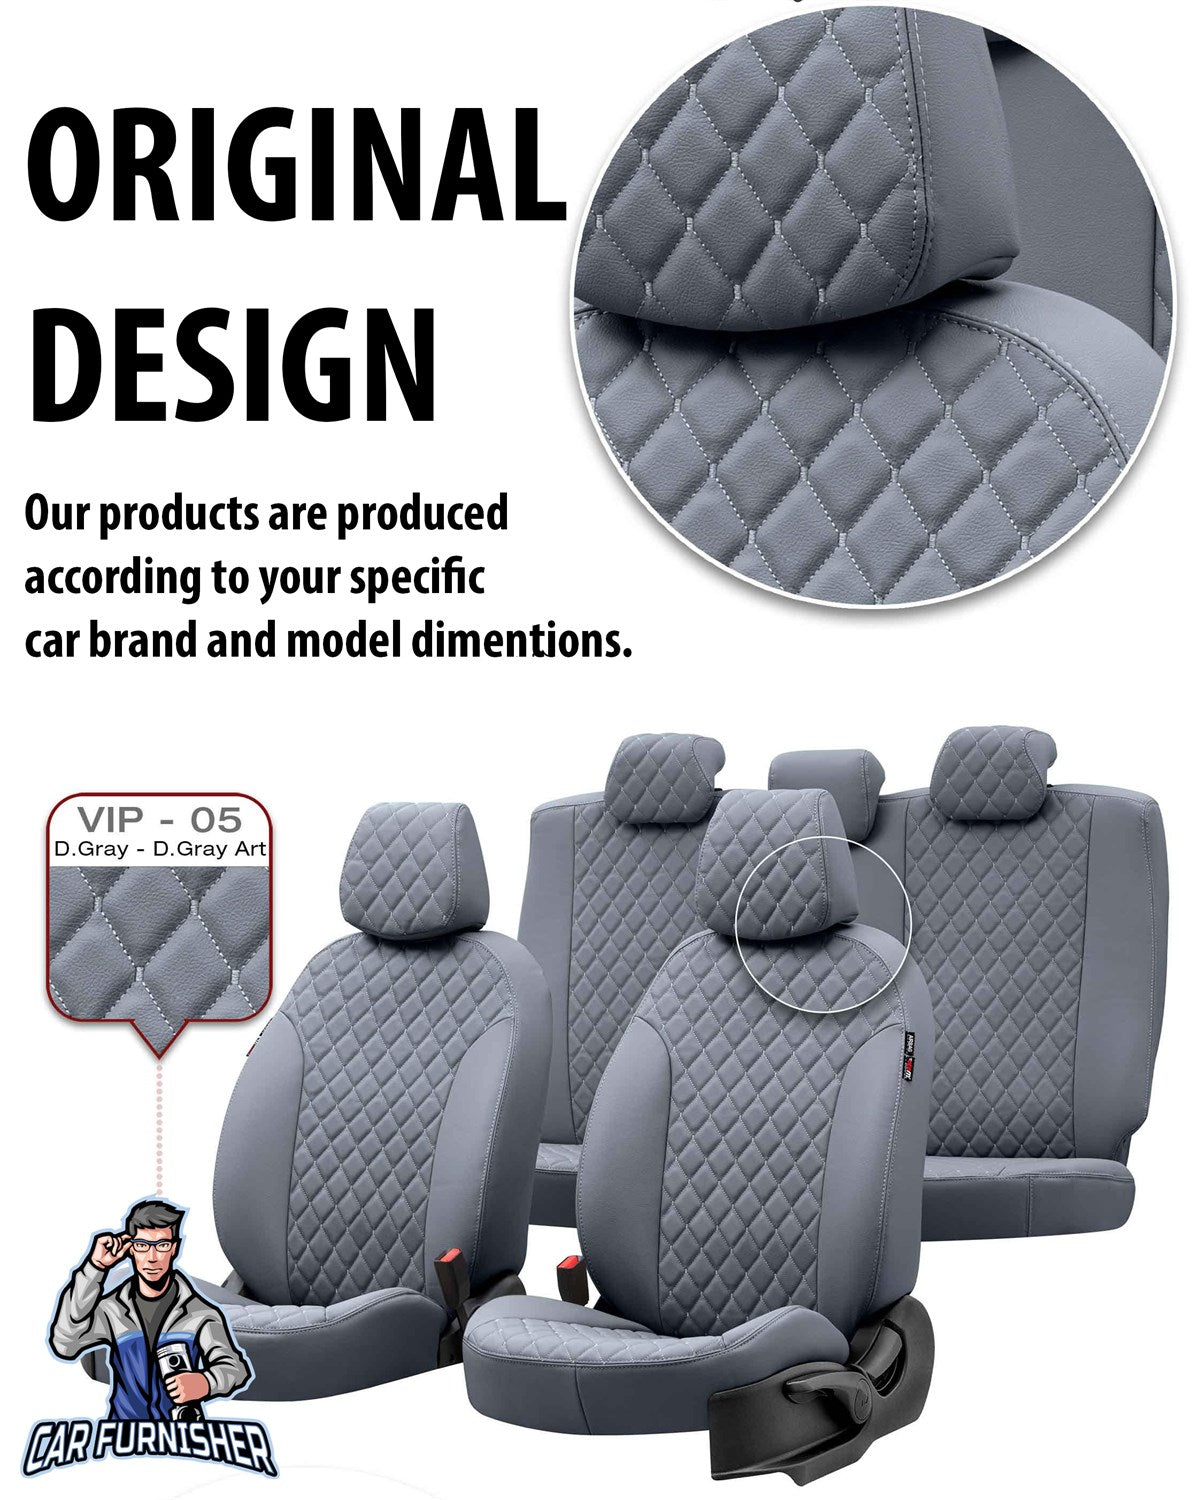 Renault Fluence Car Seat Covers 2009-2016 Madrid Design Blue Full Set (5 Seats + Handrest) Full Leather